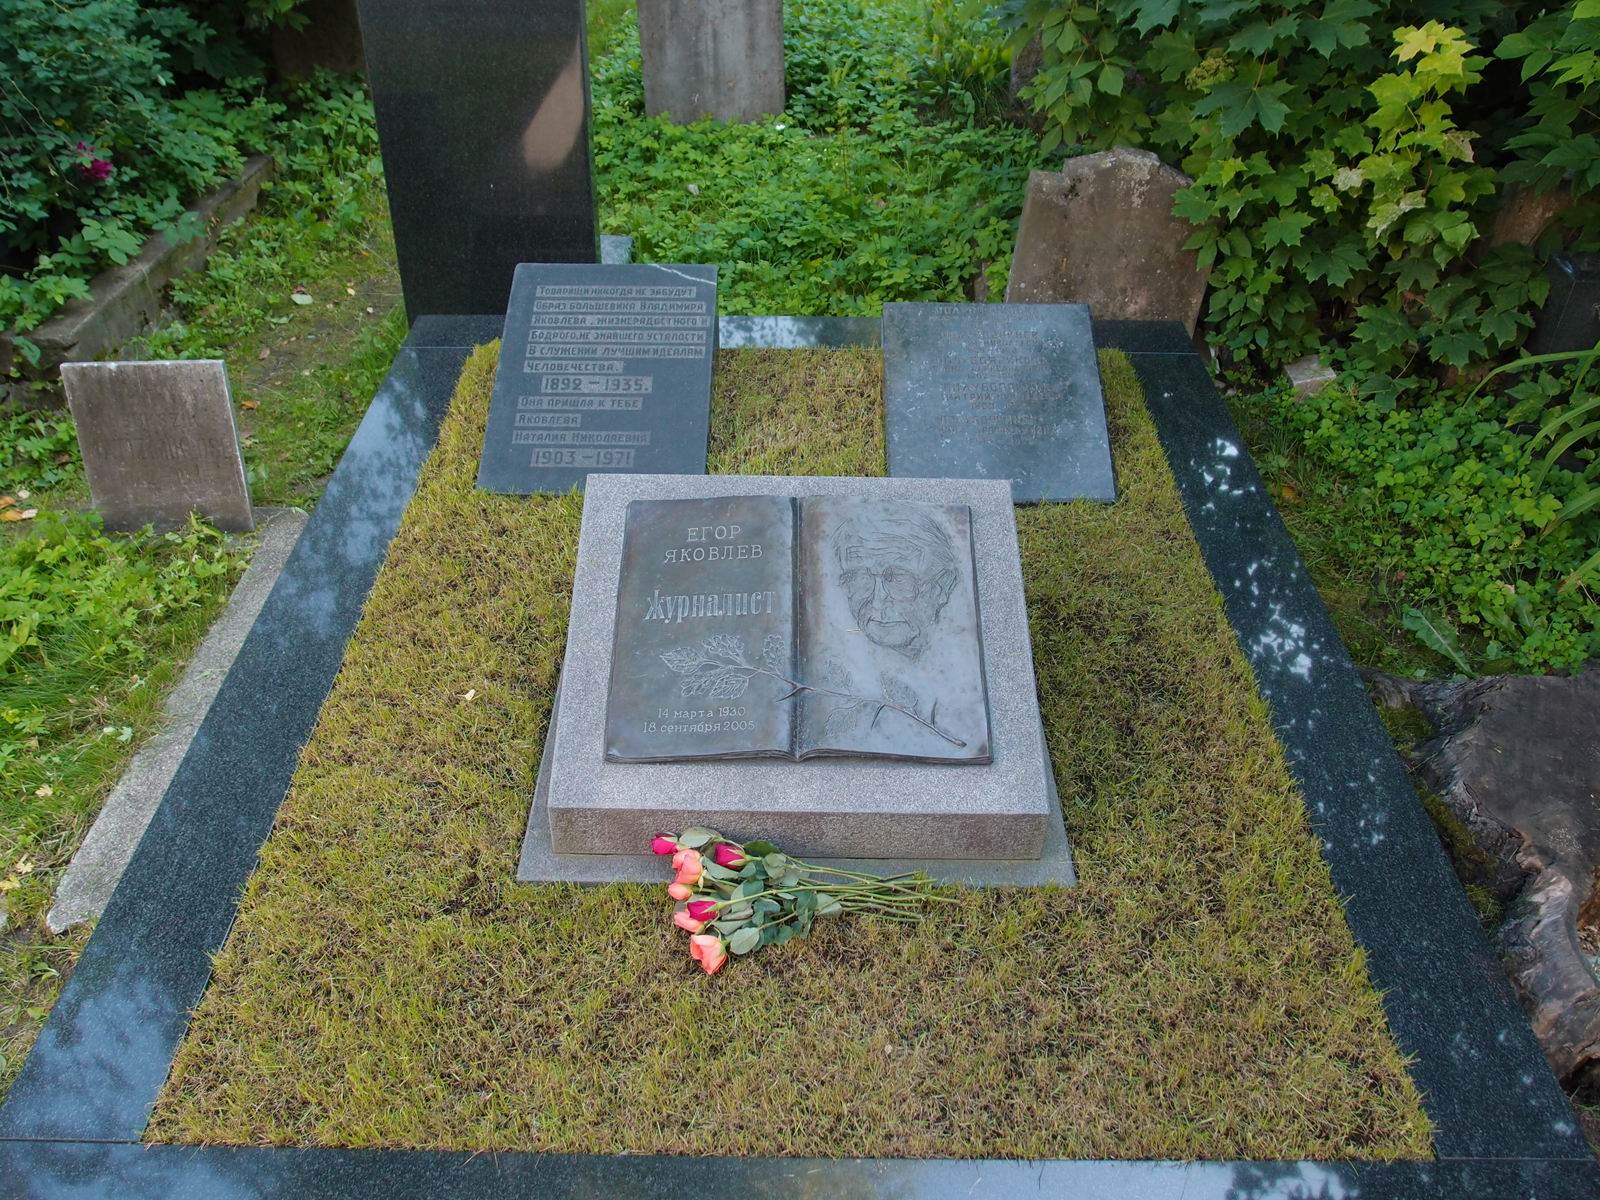 Памятник на могиле Яковлева Е.В. (1930-2005), на Новодевичьем кладбище (3-64-28). Нажмите левую кнопку мыши чтобы увидеть фрагмент памятника.